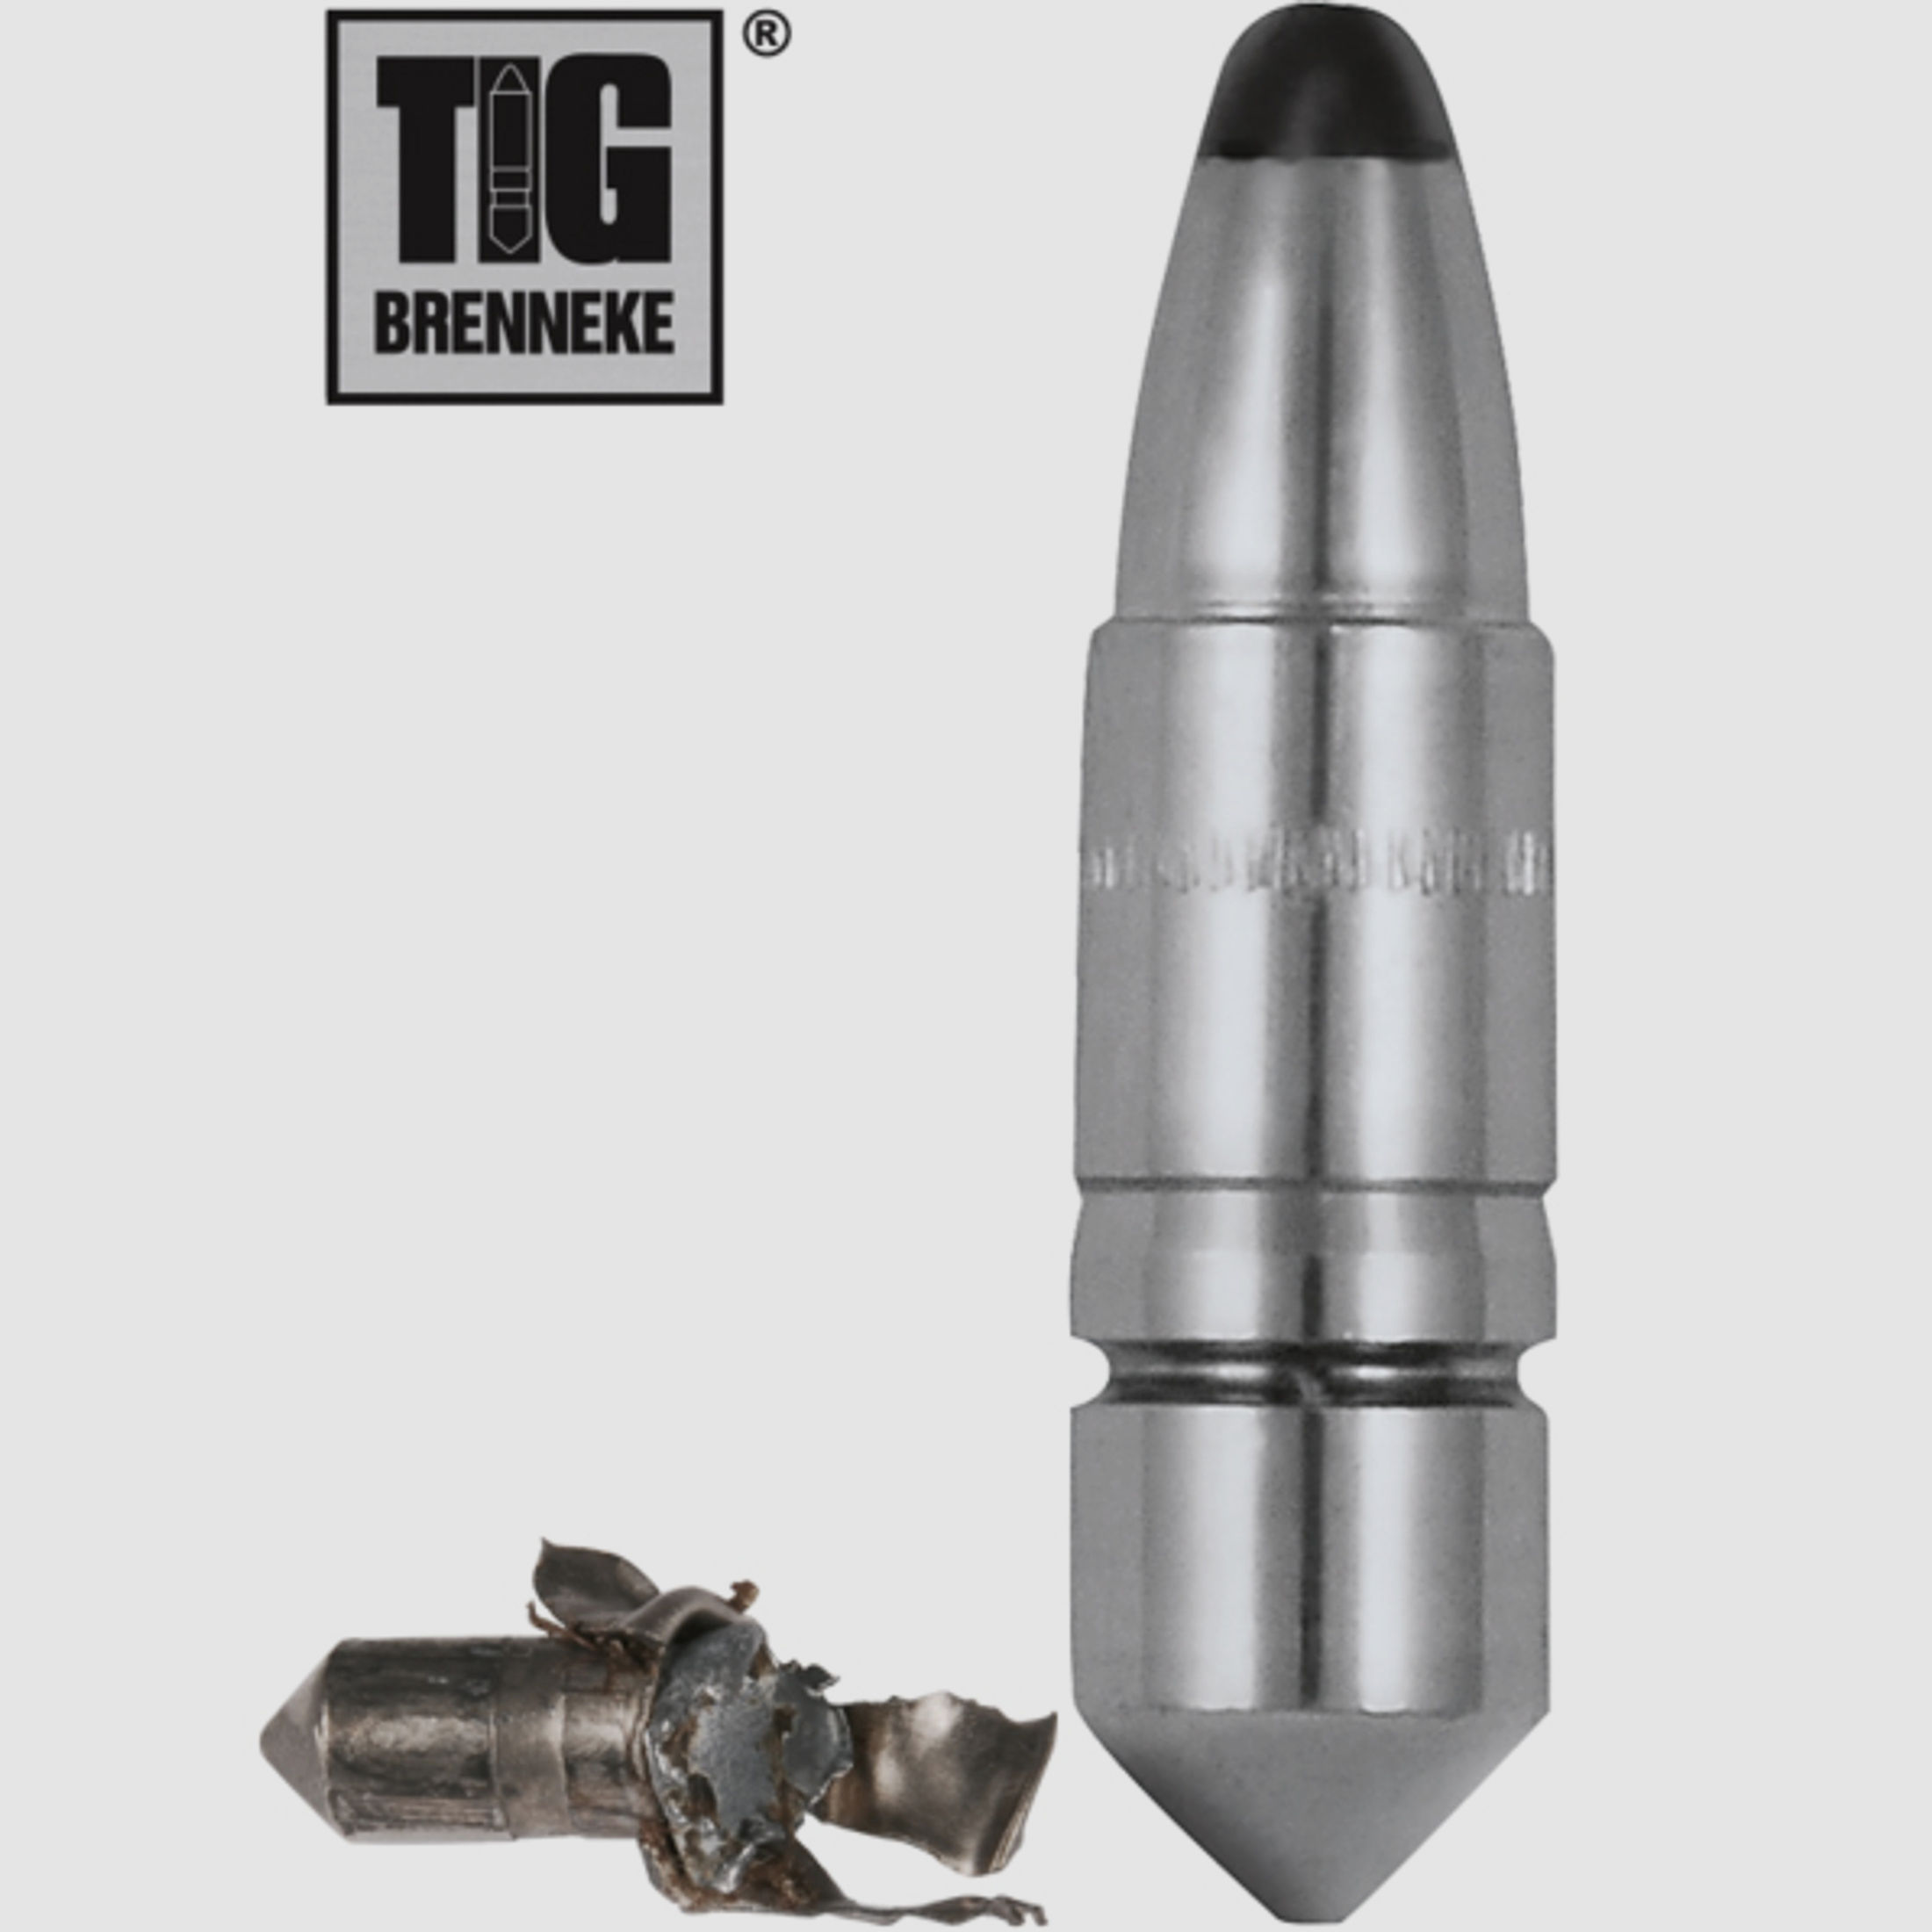 25 St BRENNEKE TIG Torpedo IDEAL Geschosse Teilzerleger BLEI JAGD 7MM .284 11,5g 177gr #550235